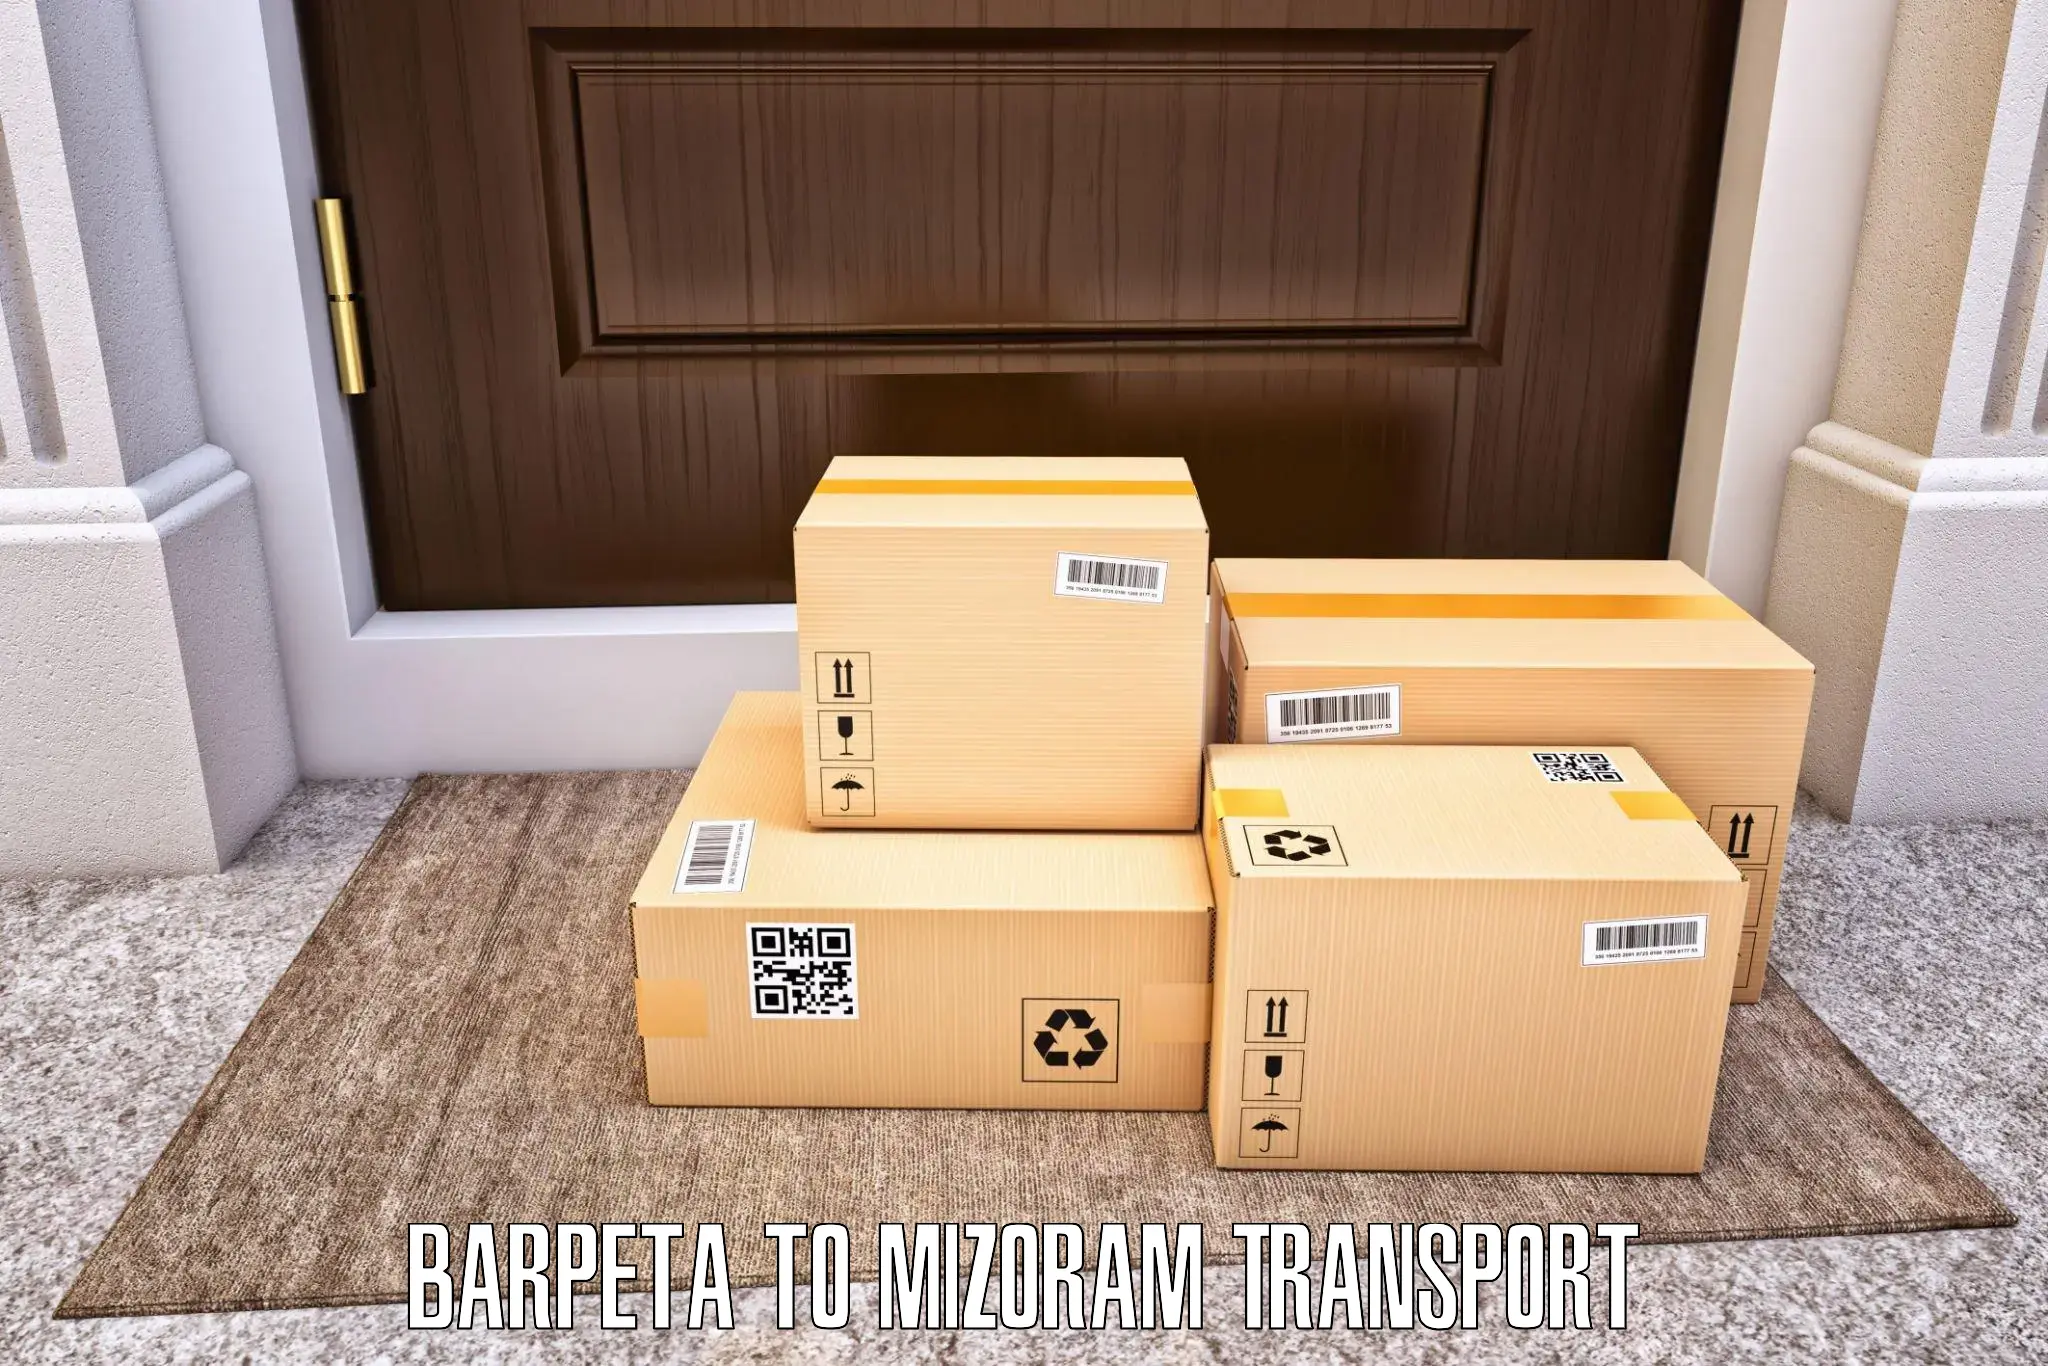 India truck logistics services in Barpeta to Mizoram